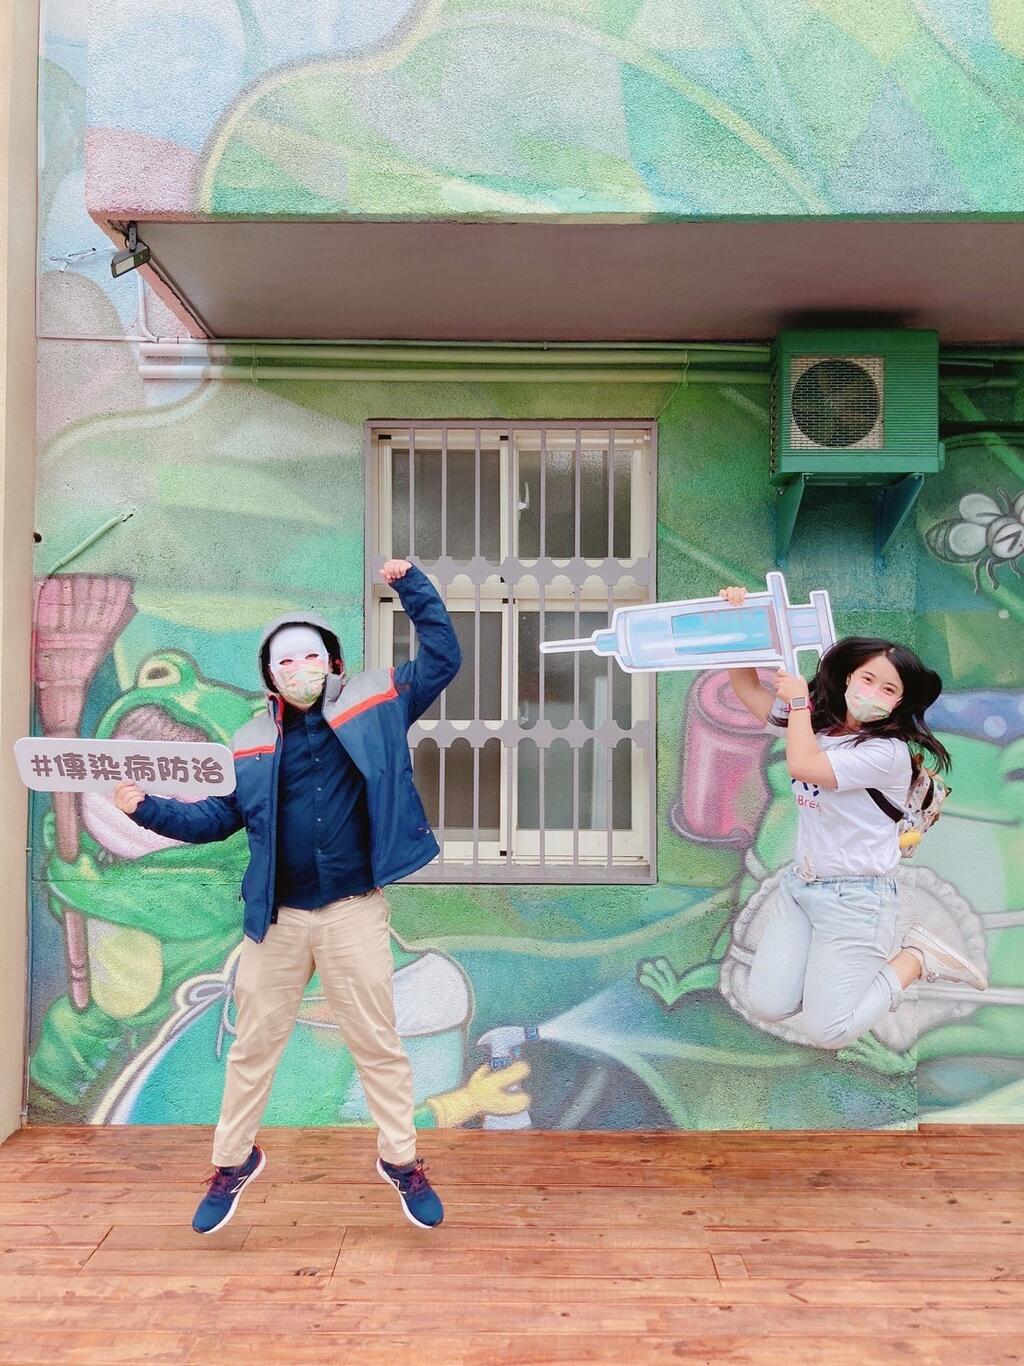 台中市神岡衛生所外牆以-幸福角落-為題的童話風格彩繪-隱喻婦幼-長照-防疫等衛生所機能